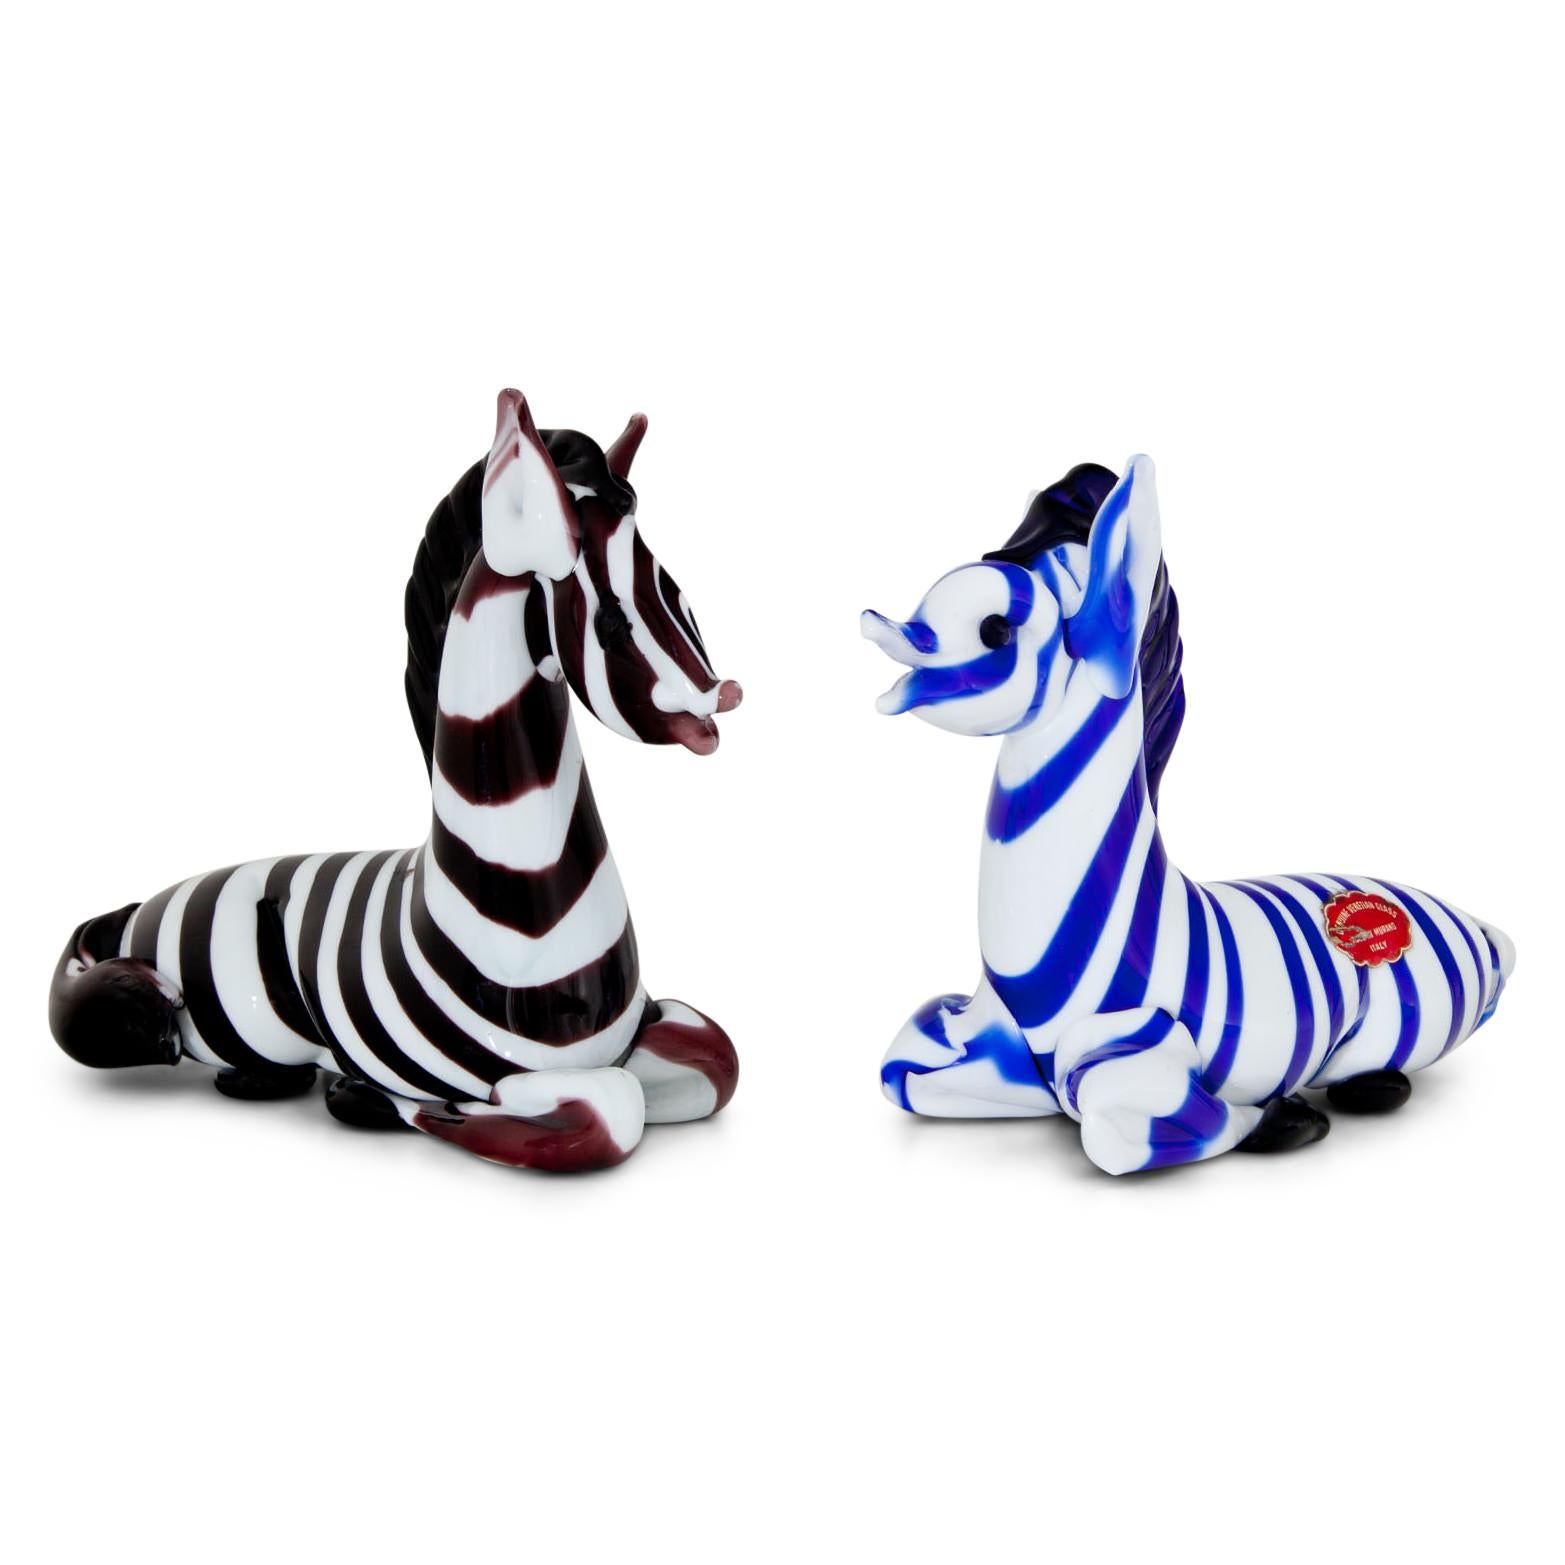 Zwei Zebras aus Muranoglas, eines ist rot und weiß gestreift, das andere blau und weiß. Beide sind mit der Aufschrift 